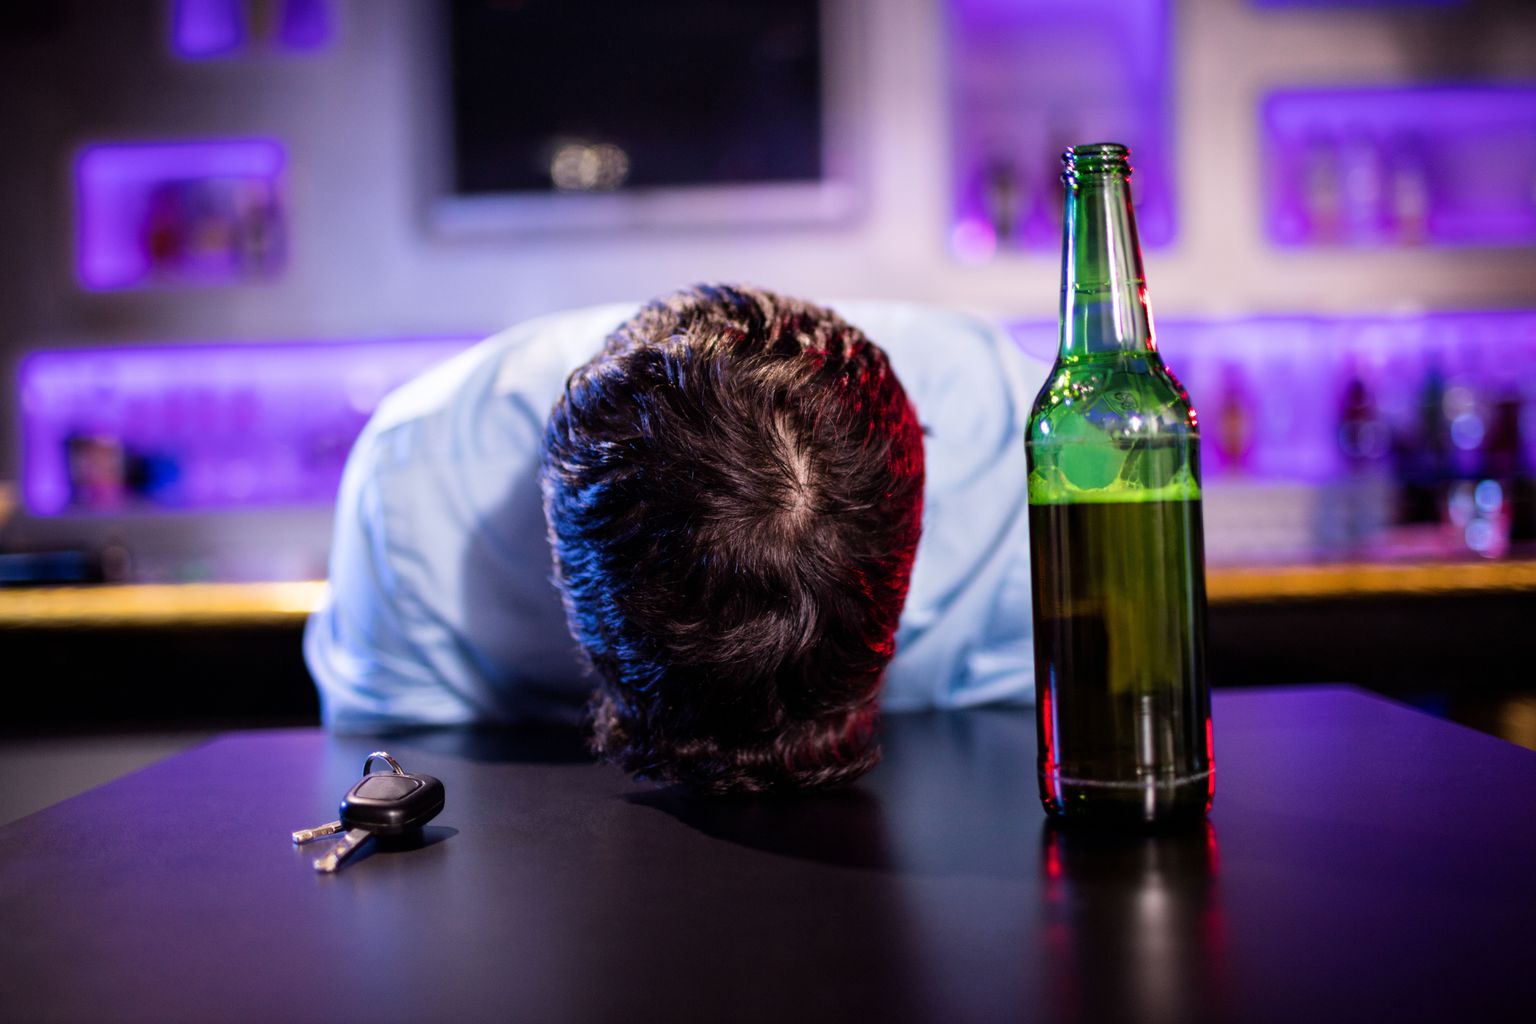 Selliseid vaatepilte peetakse sageli täiesti normaalseks, kuigi need võivad viidata tõsisele alkoholiprobleemile.